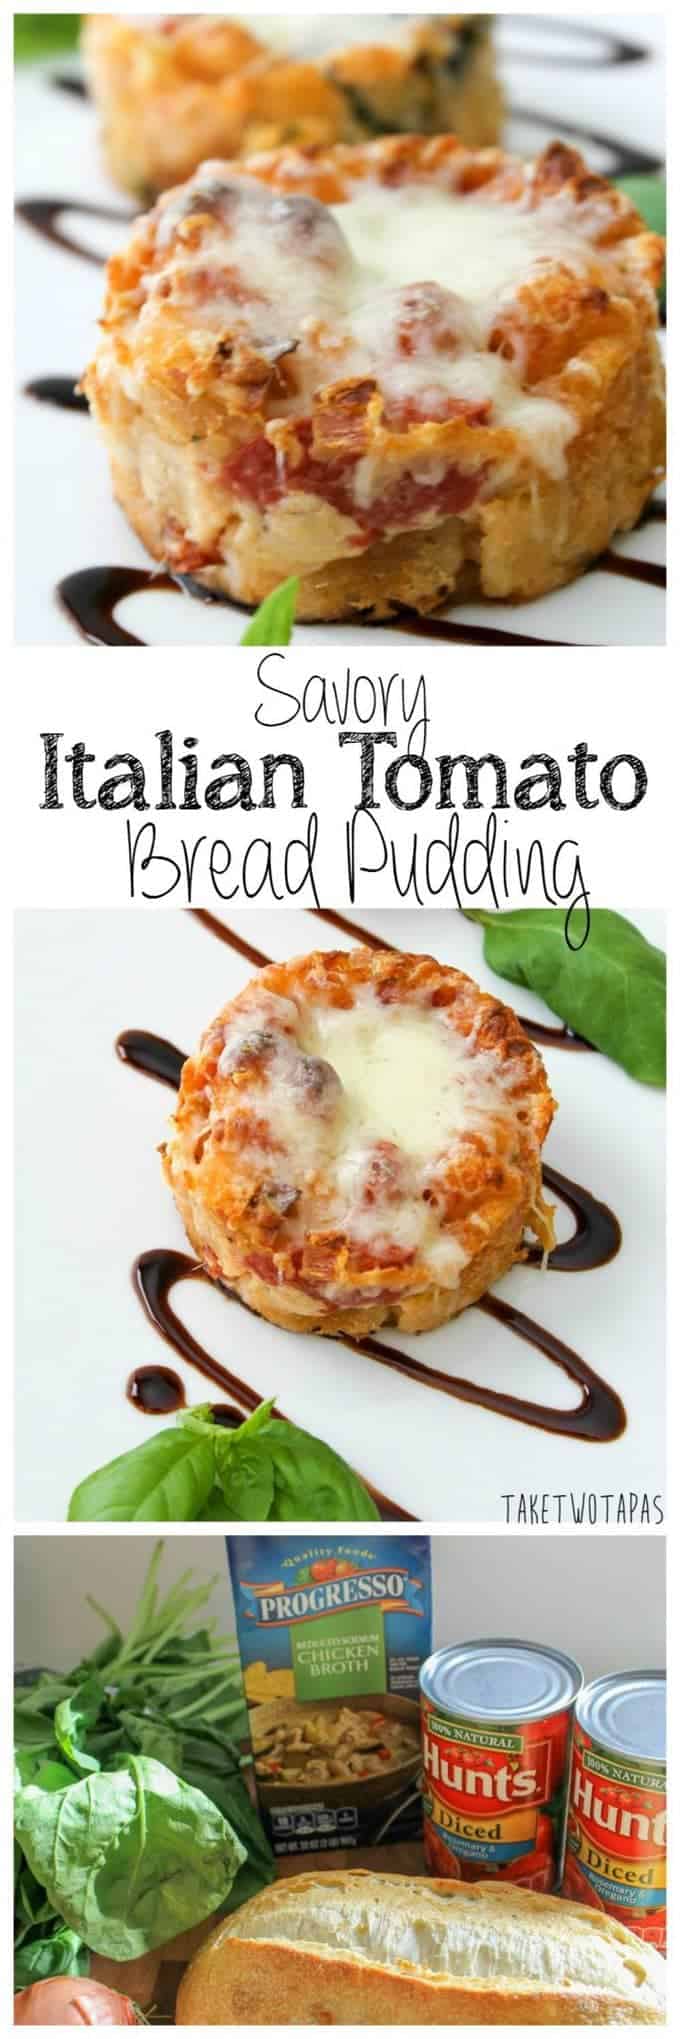 Savory Italian Tomato Bread Pudding | Take Two Tapas